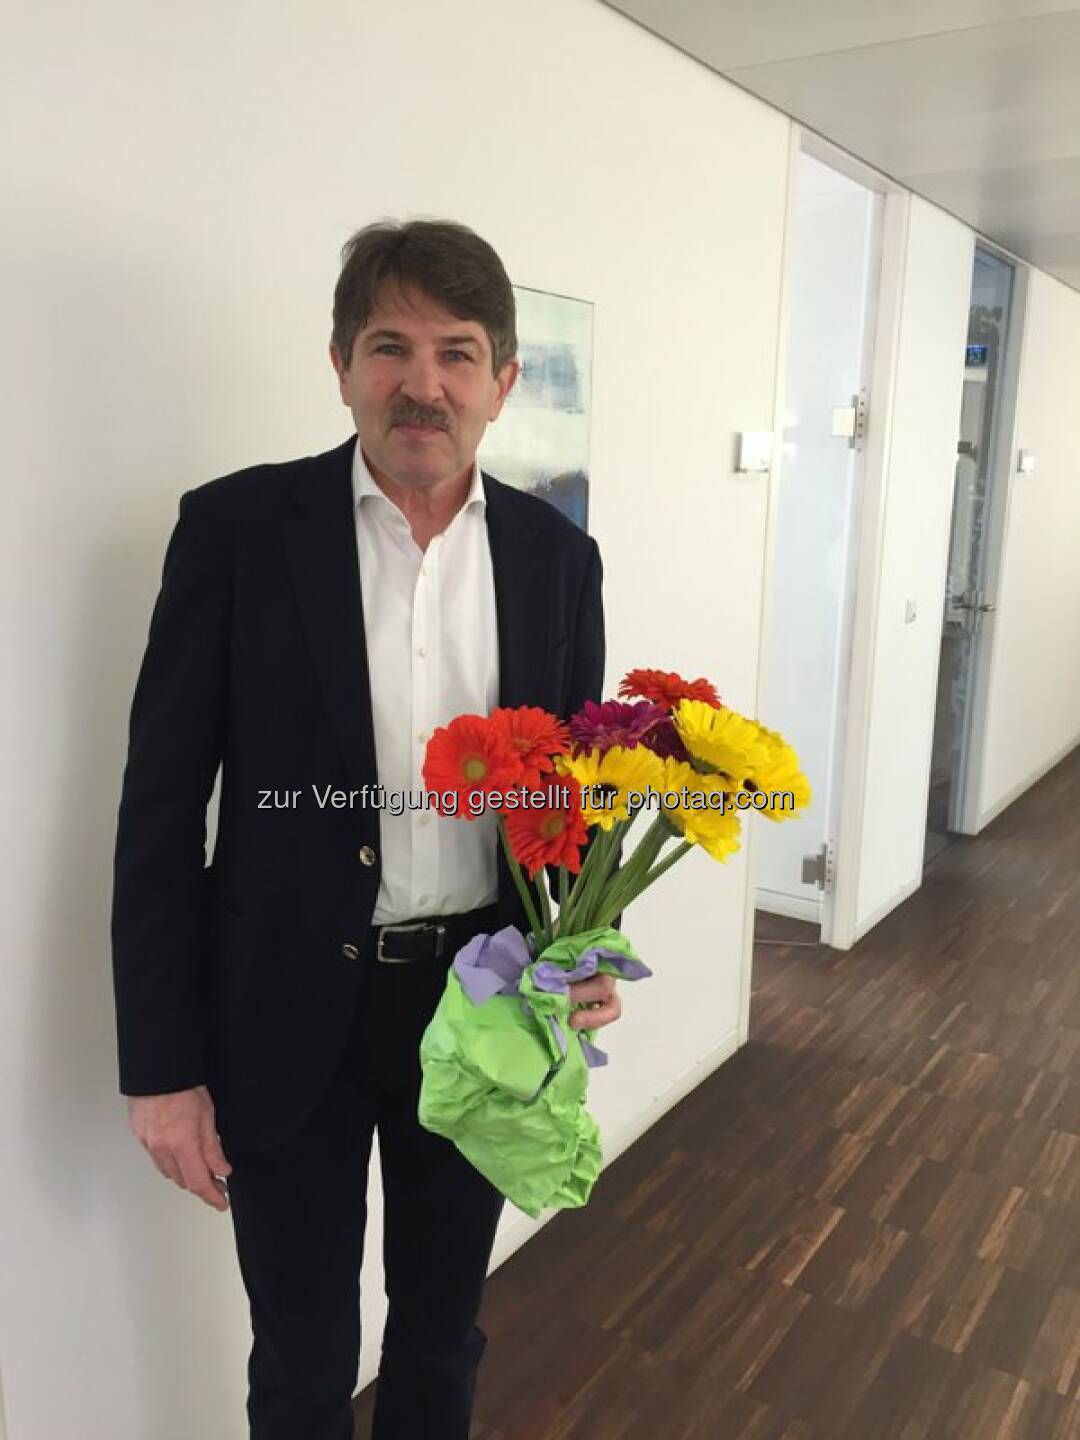 S Immo Vorstand Ernst Vejdovszky verteilt Blumen zum #Weltfrauentag http://twitter.com/simmoag/status/707130434602274816/photo/1  Source: http://facebook.com/simmoag